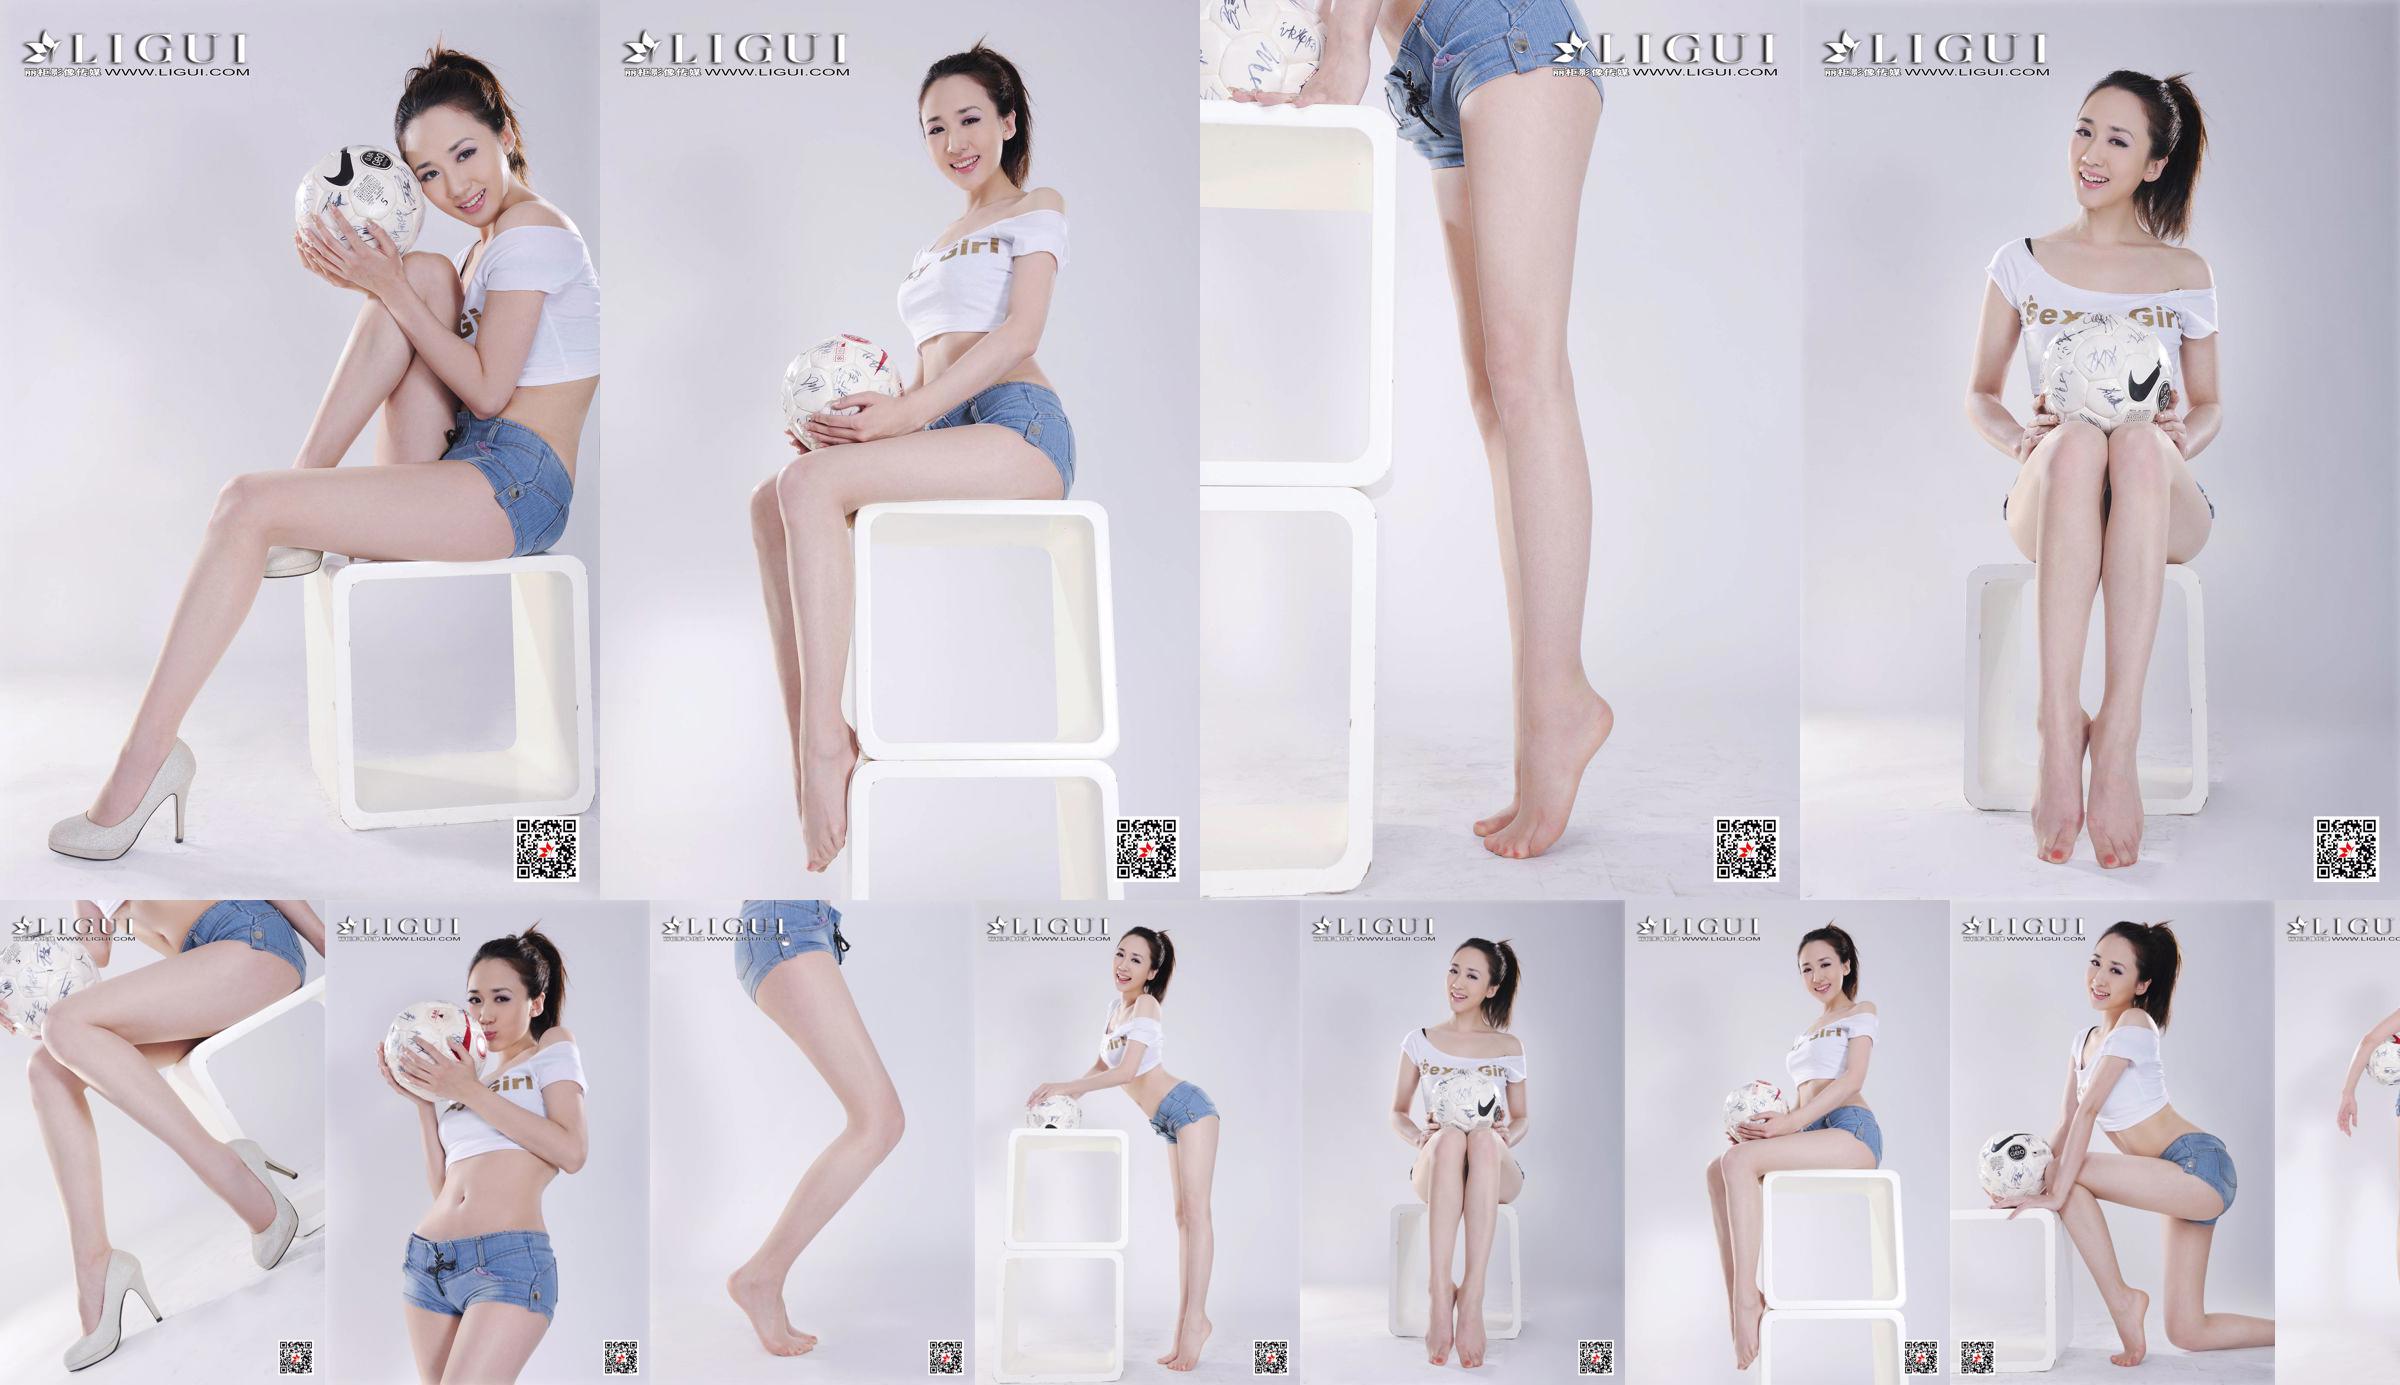 Model Qiu Chen "Super Short Hot Pants Football Girl" [LIGUI] No.e005d0 Page 28